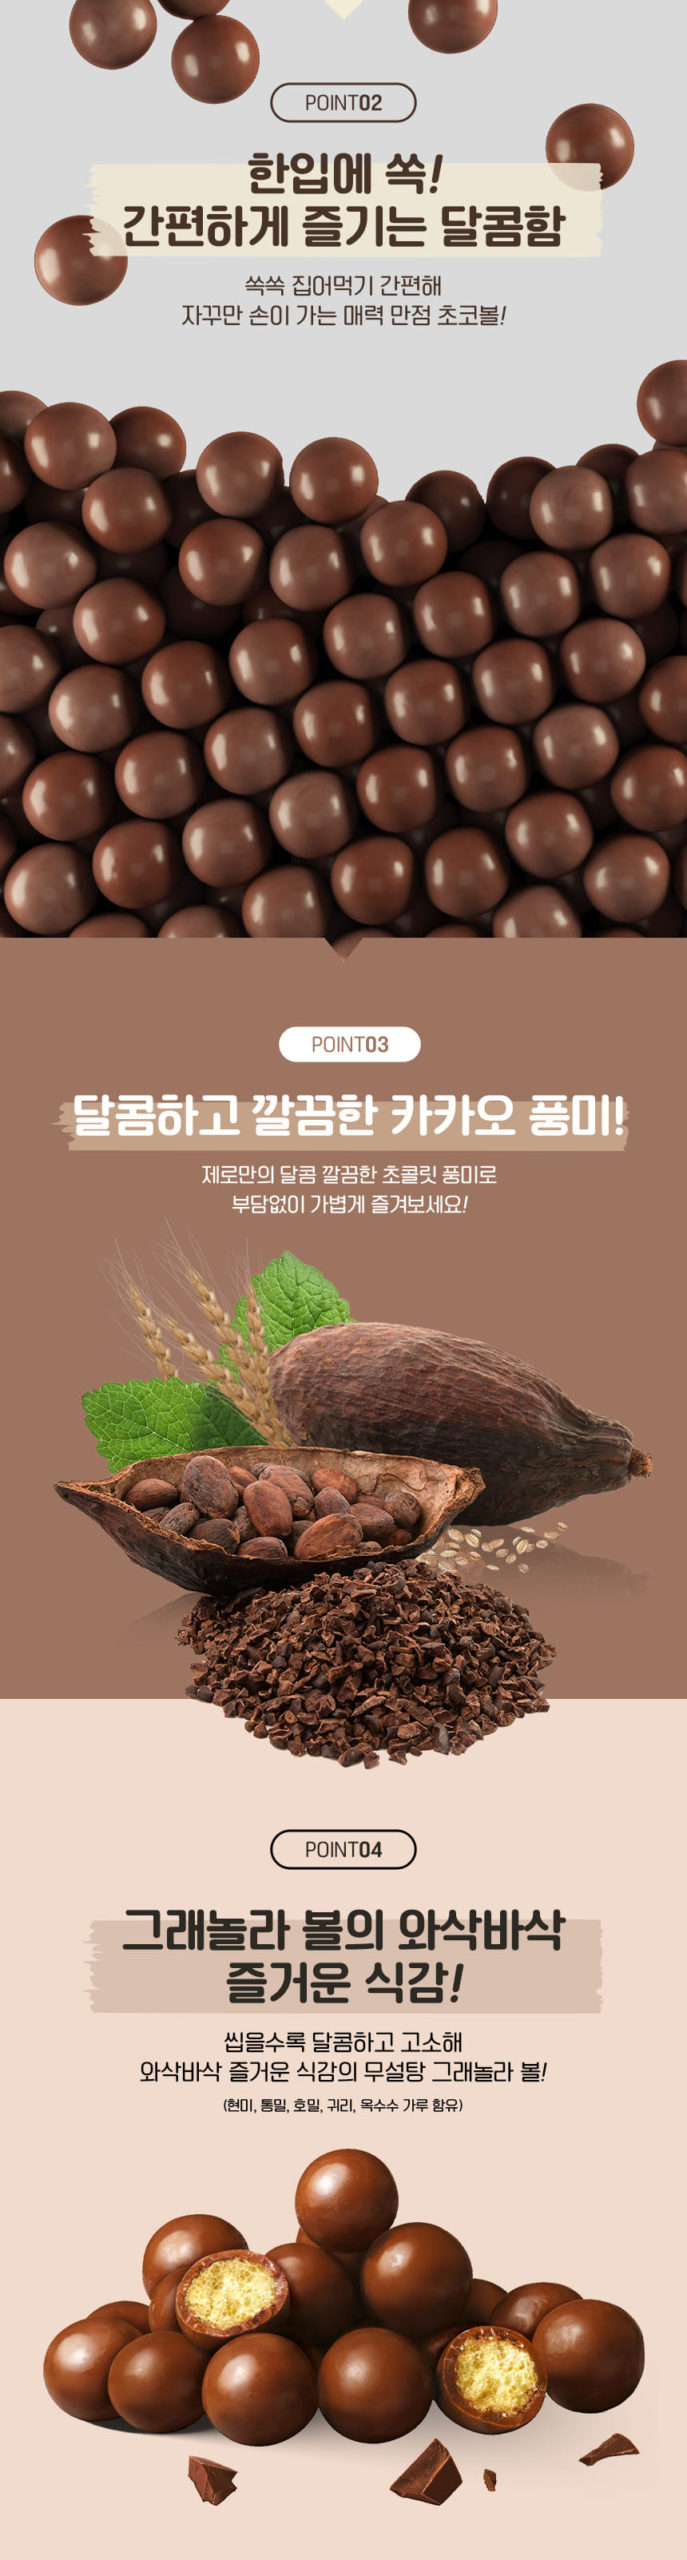 韓國食品-[Lotte] 無糖朱古力波 140g